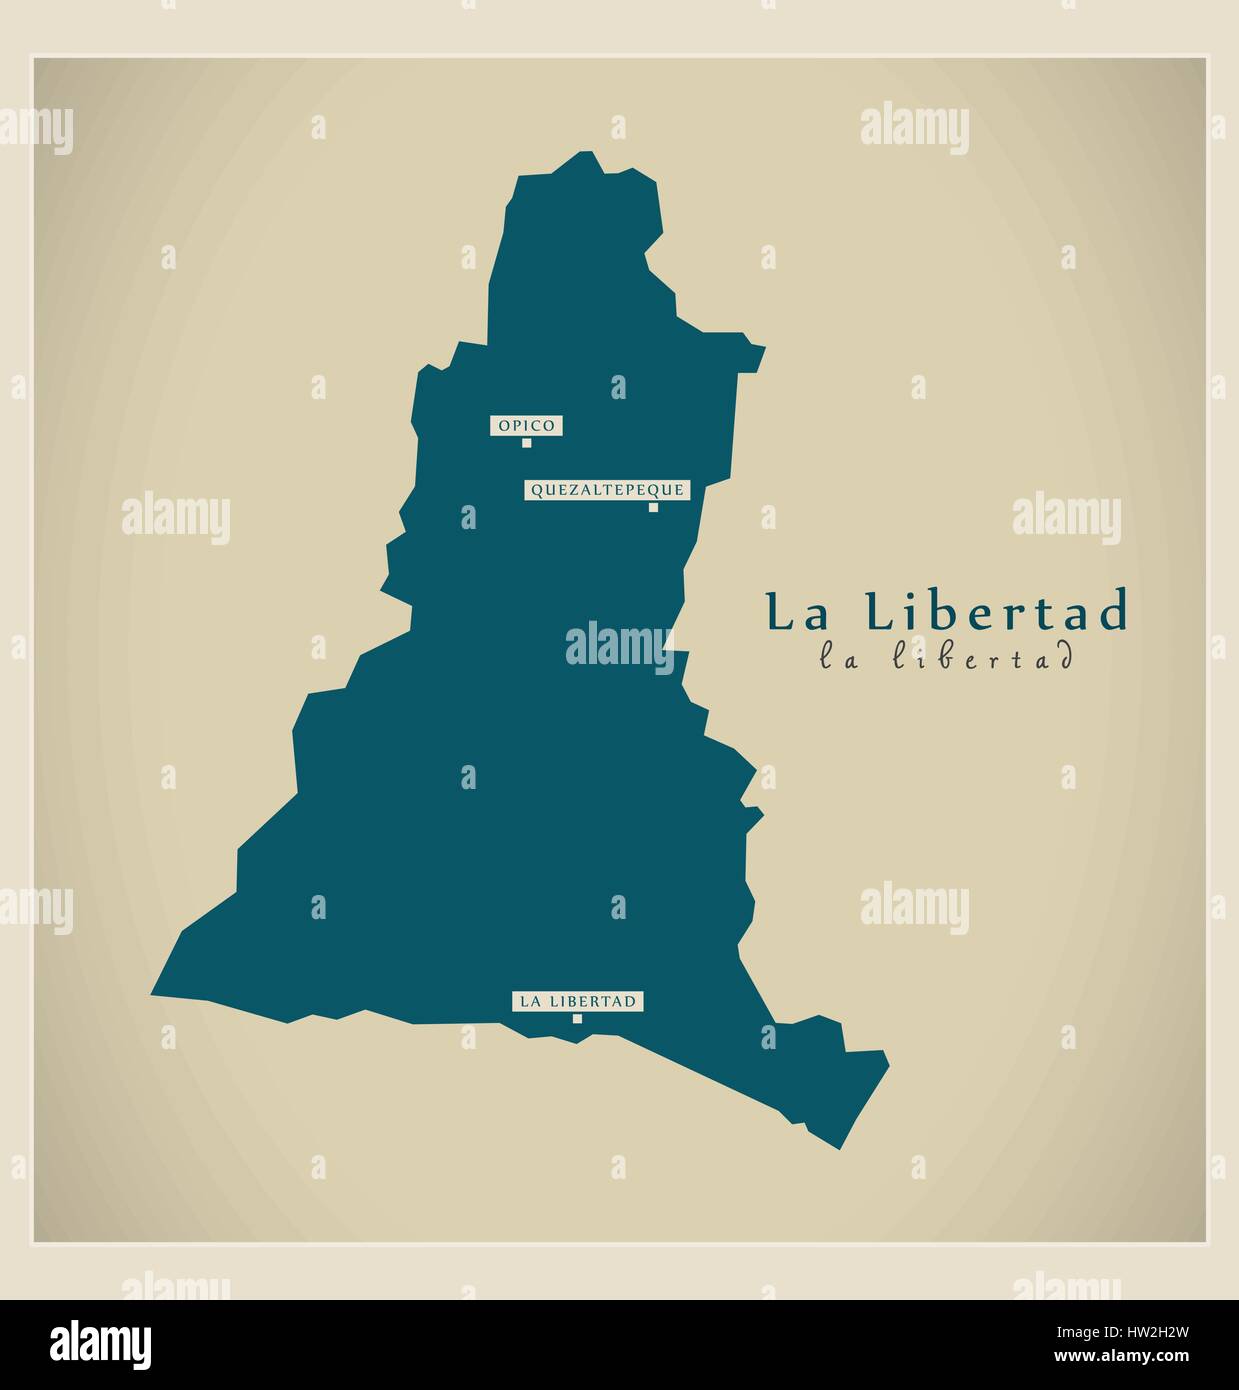 Mappa moderna - La Libertad SV illustrazione silhouette Illustrazione Vettoriale